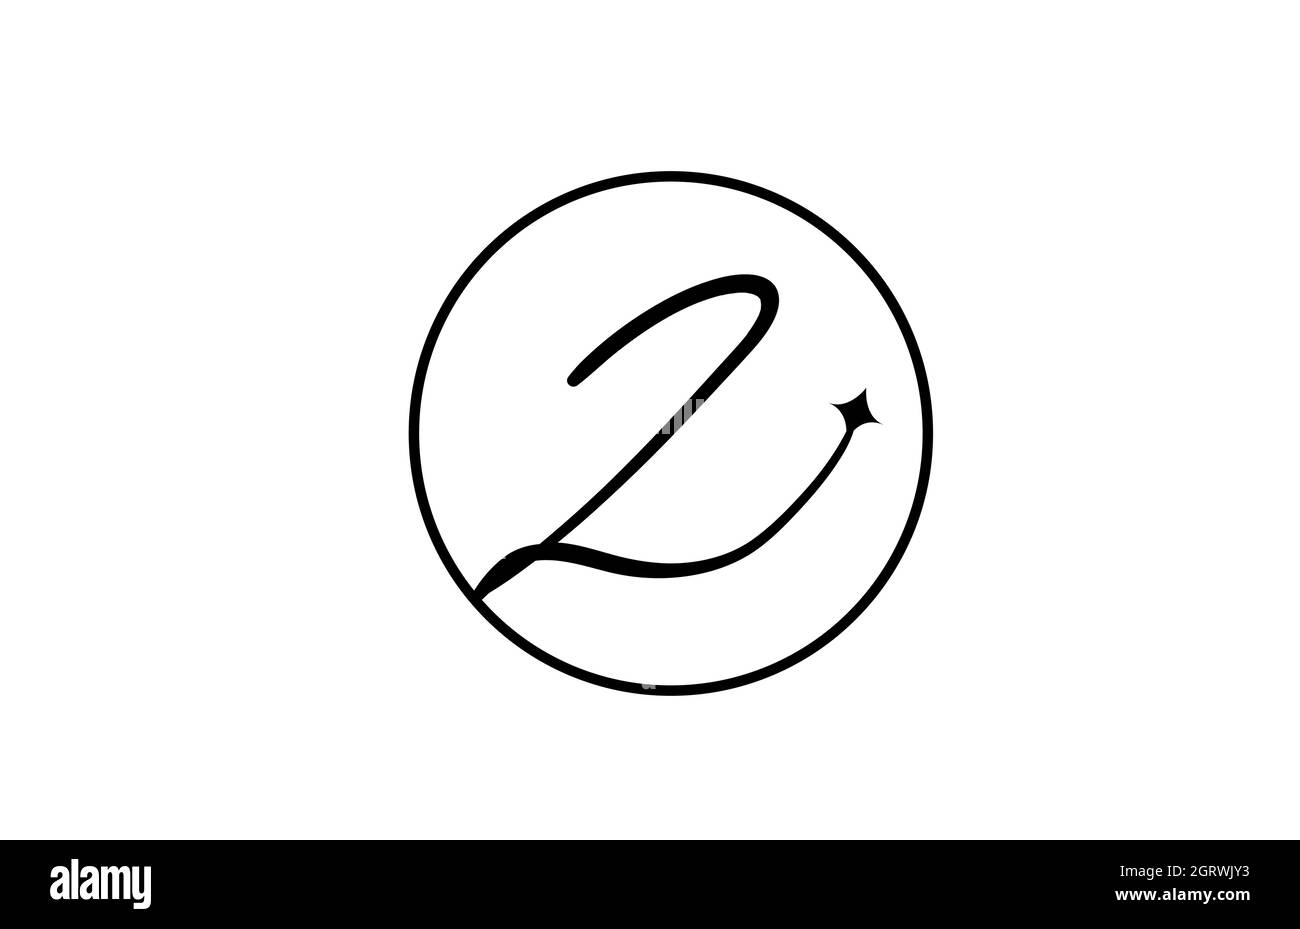 Z Alphabet Buchstaben Logo für Business mit Stern und Kreis. Schlichter eleganter Schriftzug für Unternehmen. Corporate Identity Branding Icon Design in weiß und schwarz Stock Vektor